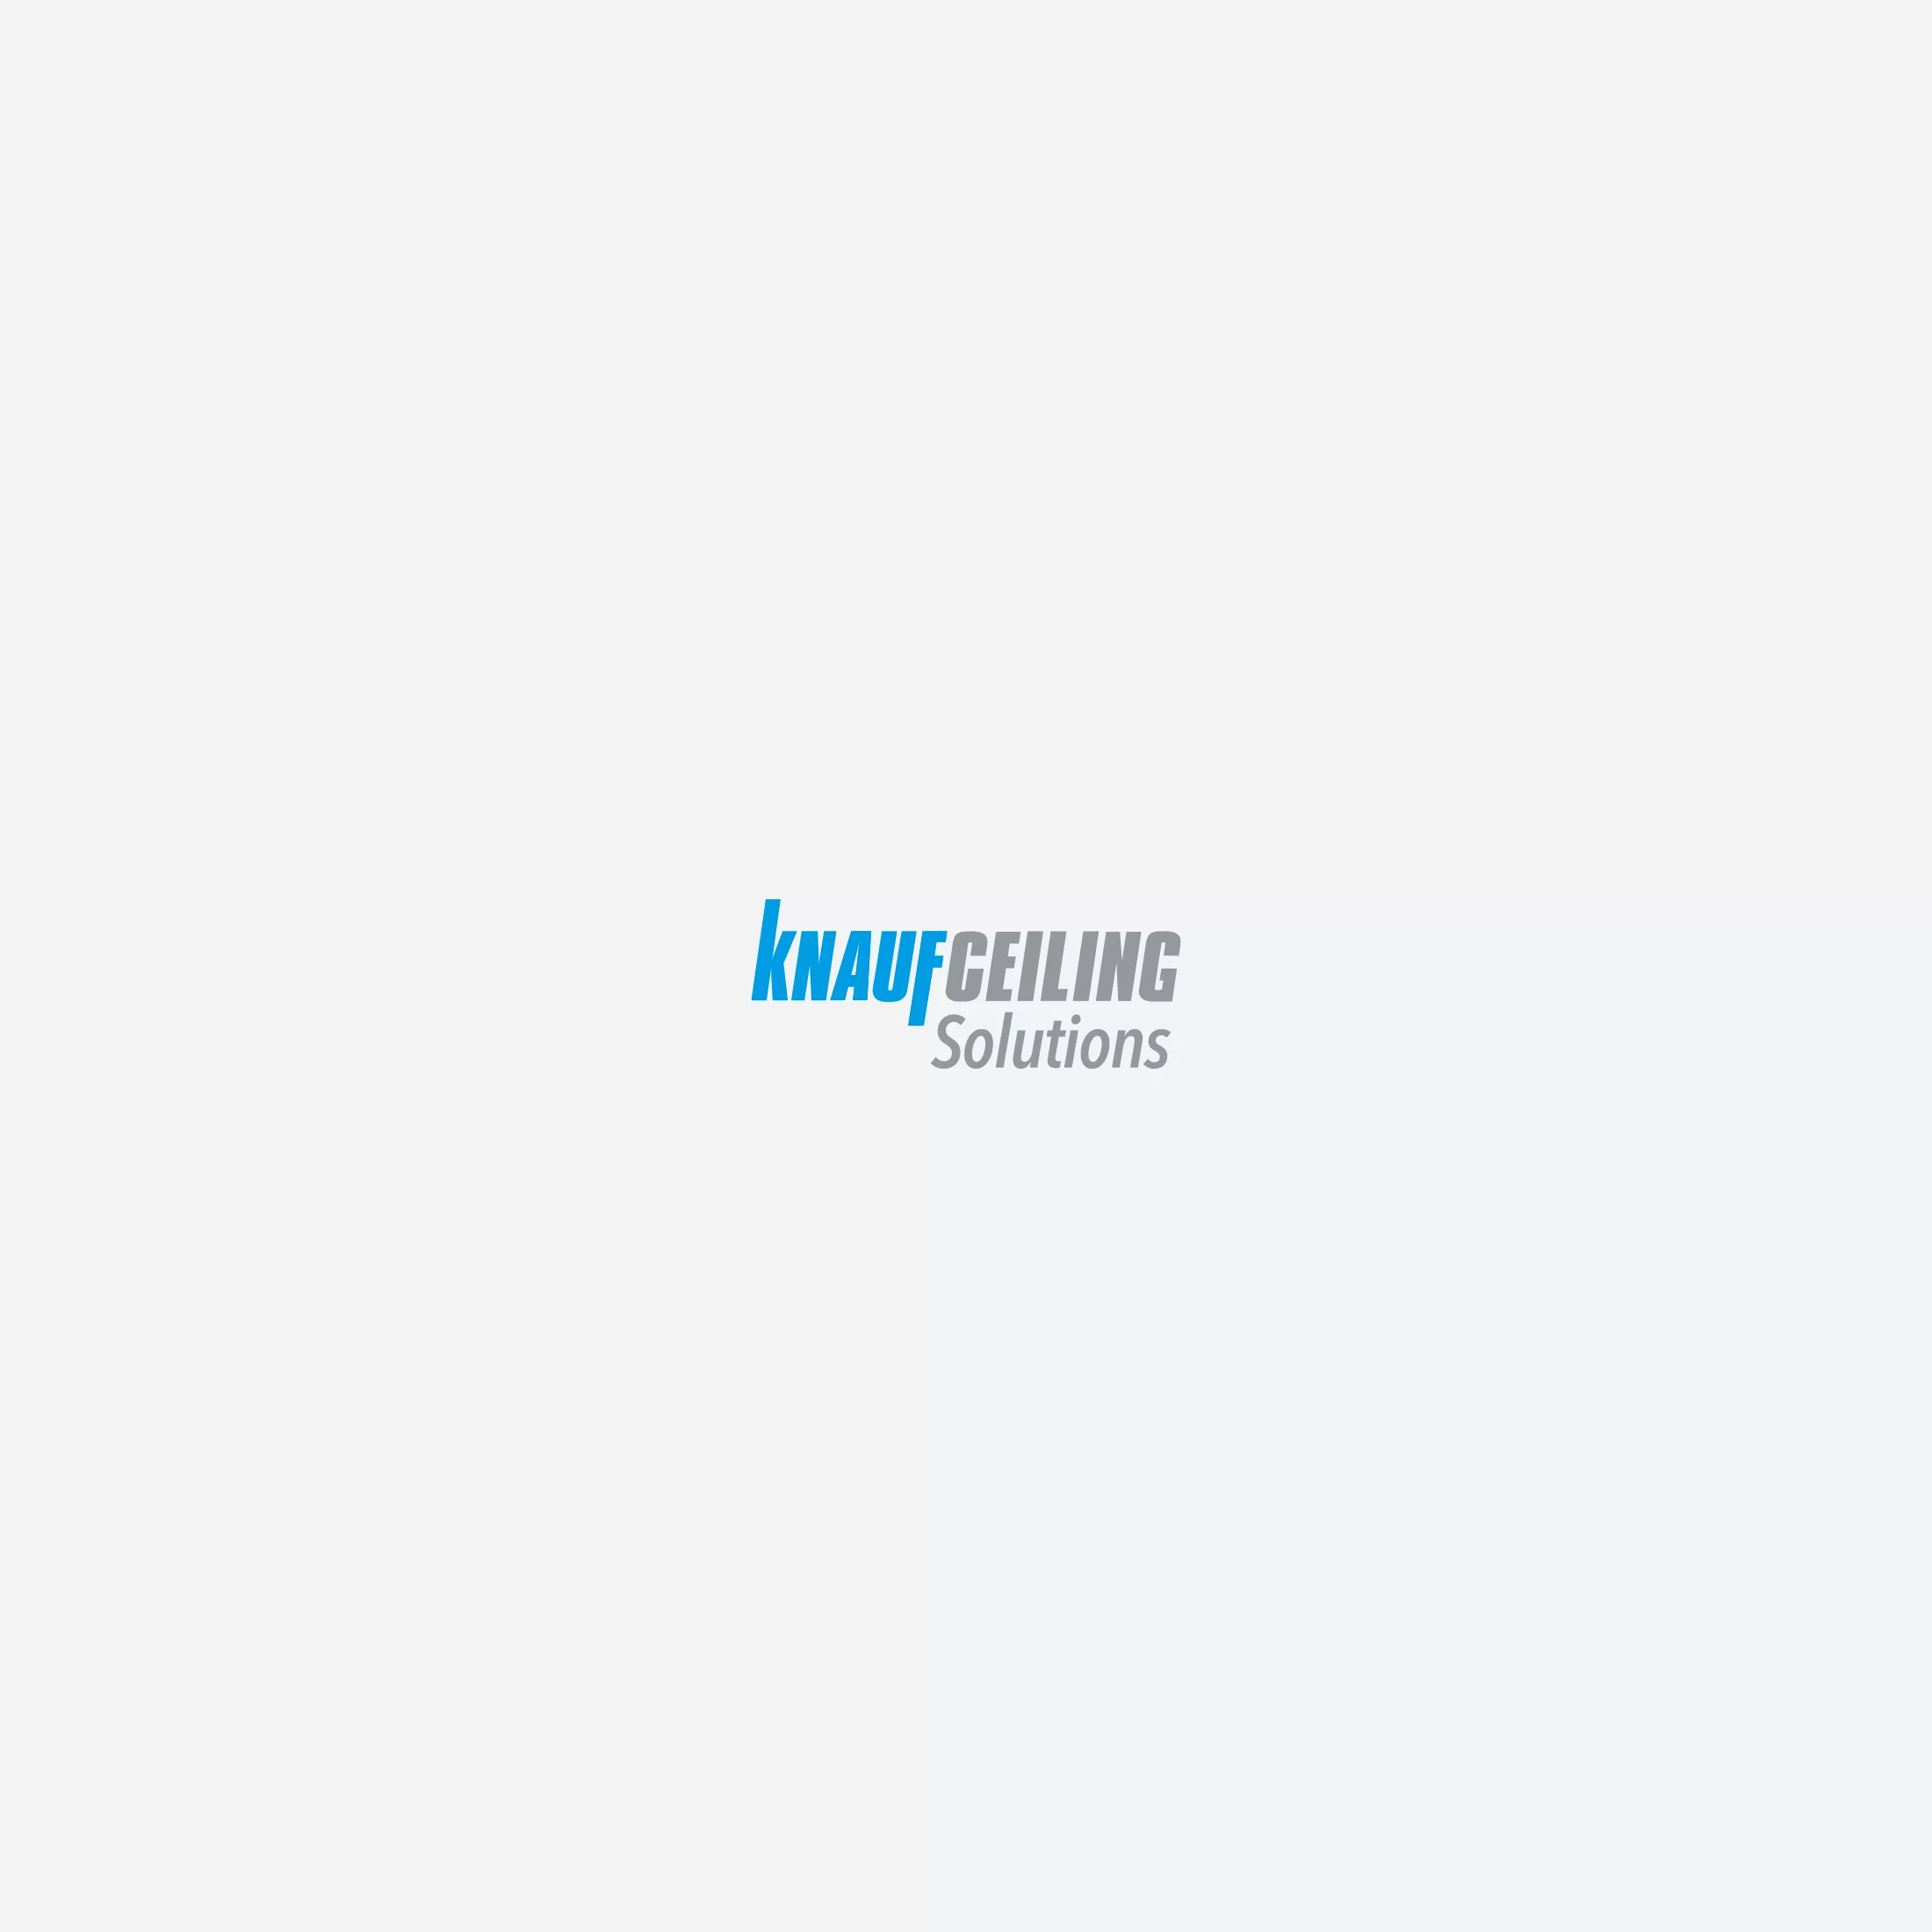 Knauf Partner logos